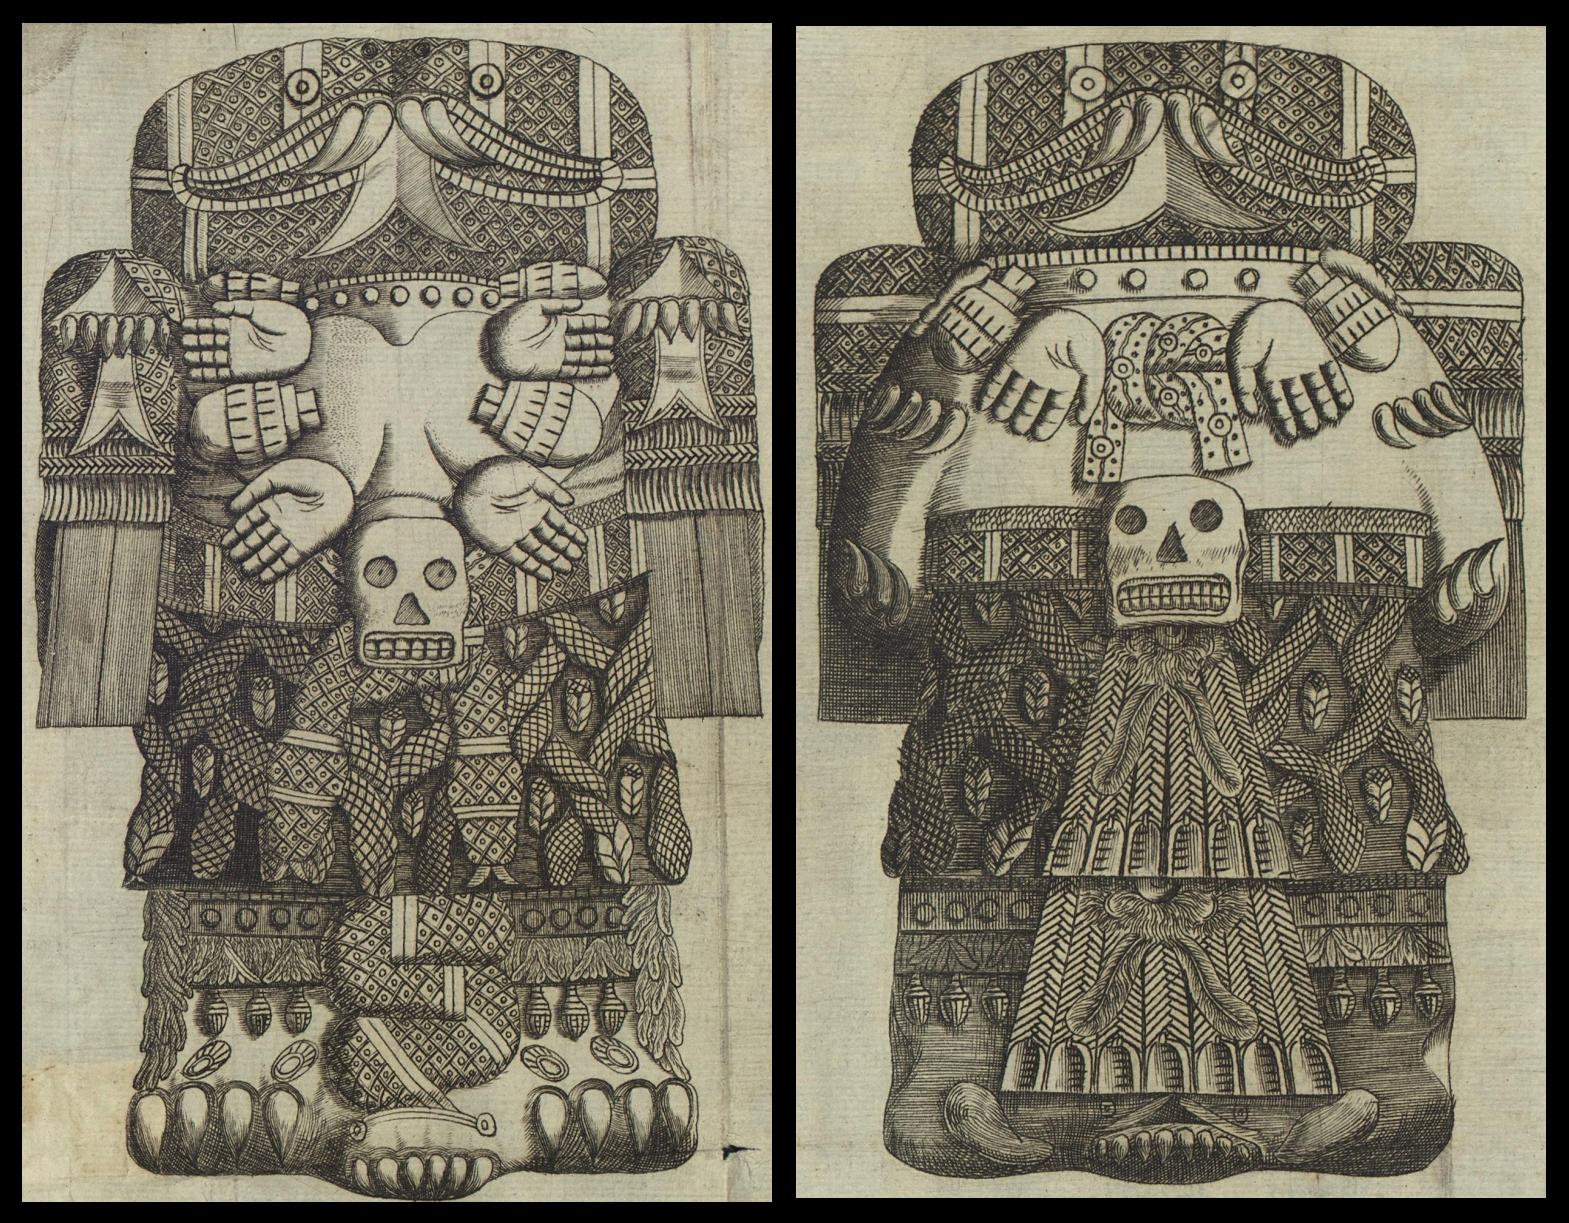 Details from Aztec stones described by Antonio de León y Gama